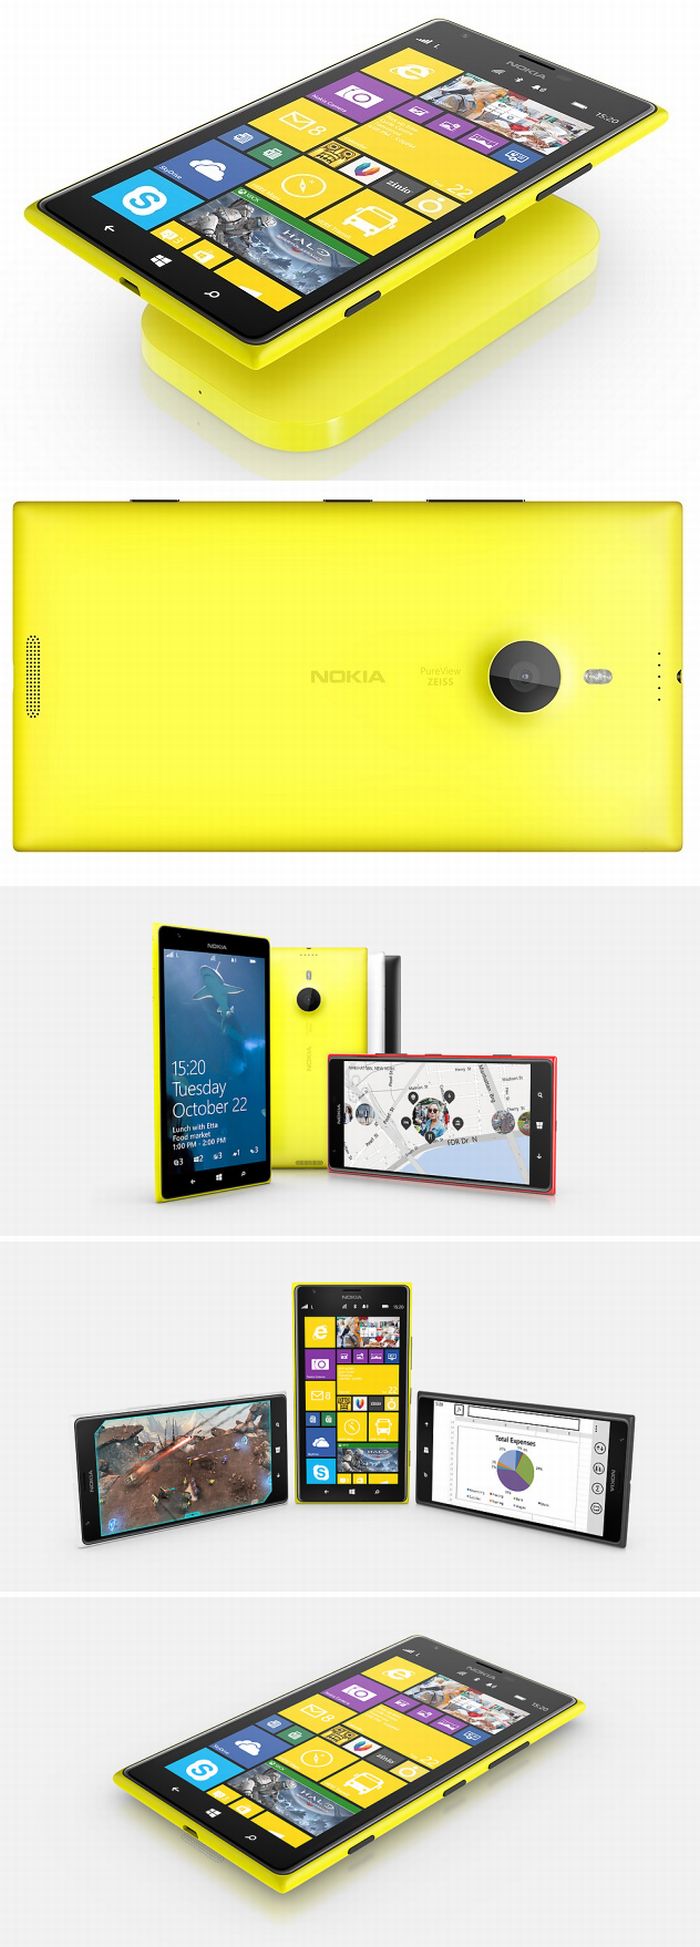 Hivatalos: megjelent a Nokia Lumia 1520 phablet